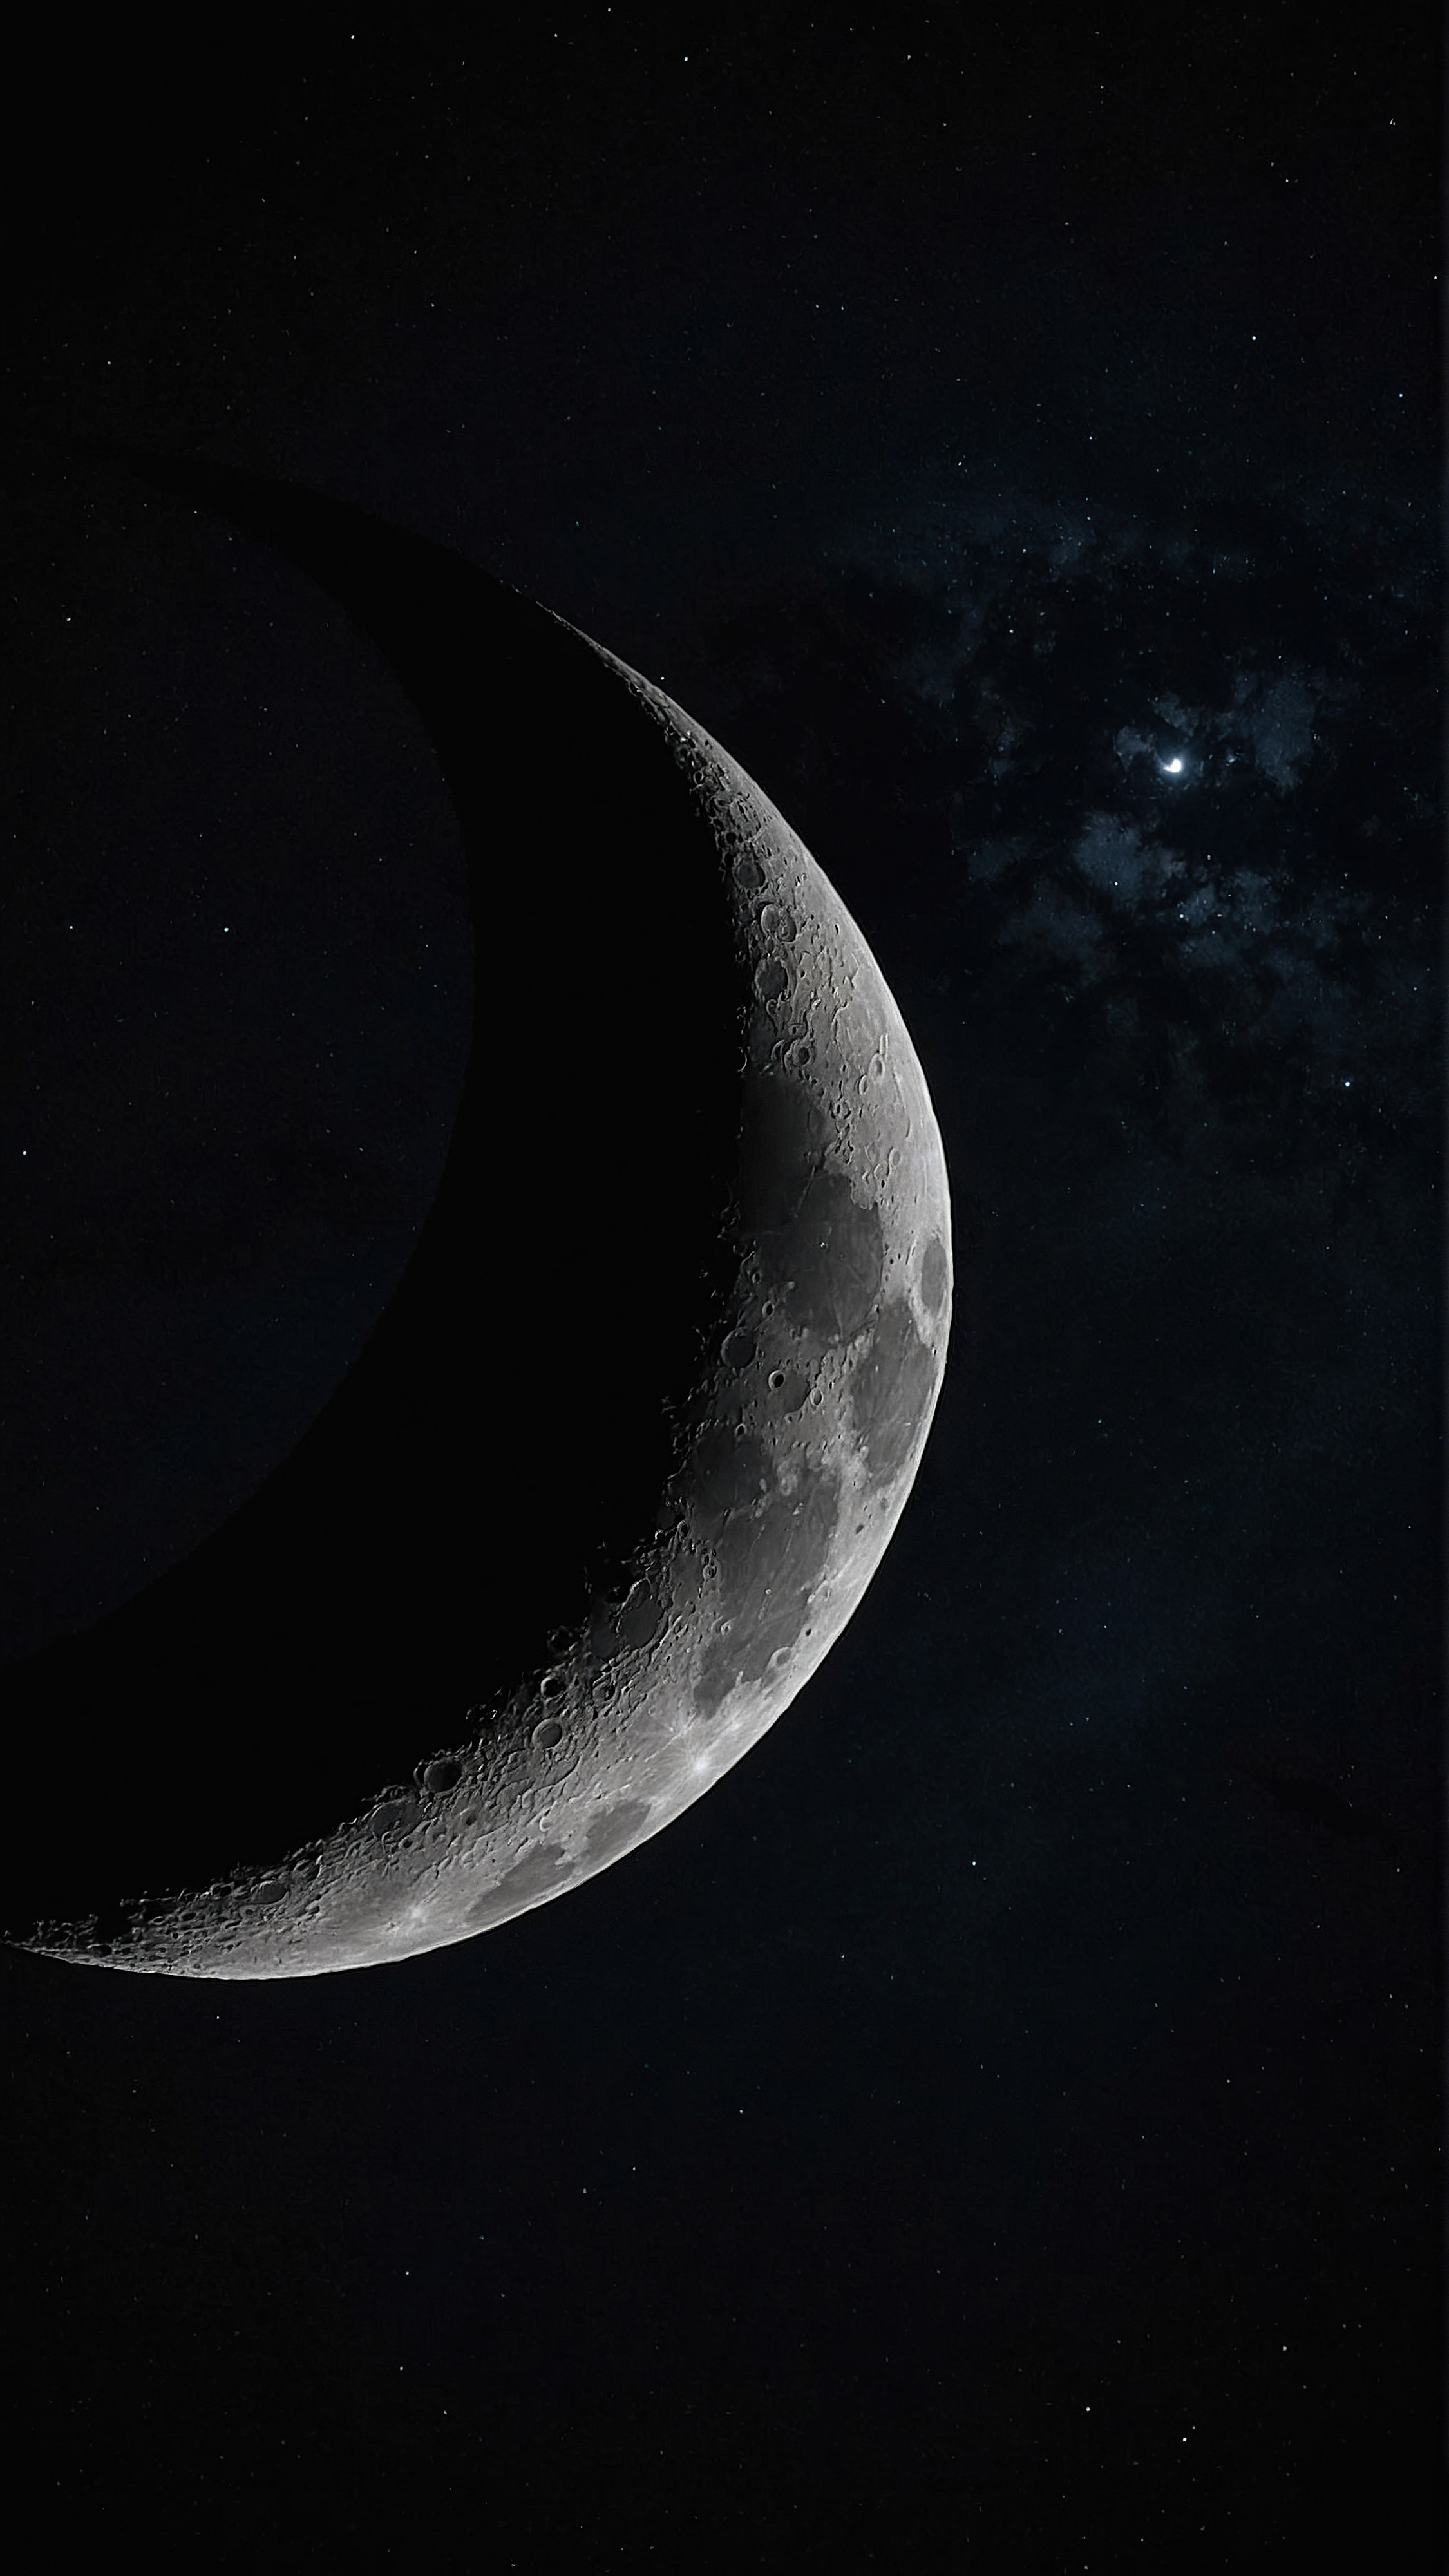 Découvrez l'attrait de l'espace à travers un fond d'écran noir pour iPhone, présentant un croissant de lune détaillé, illuminé contre le fond sombre de l'espace.